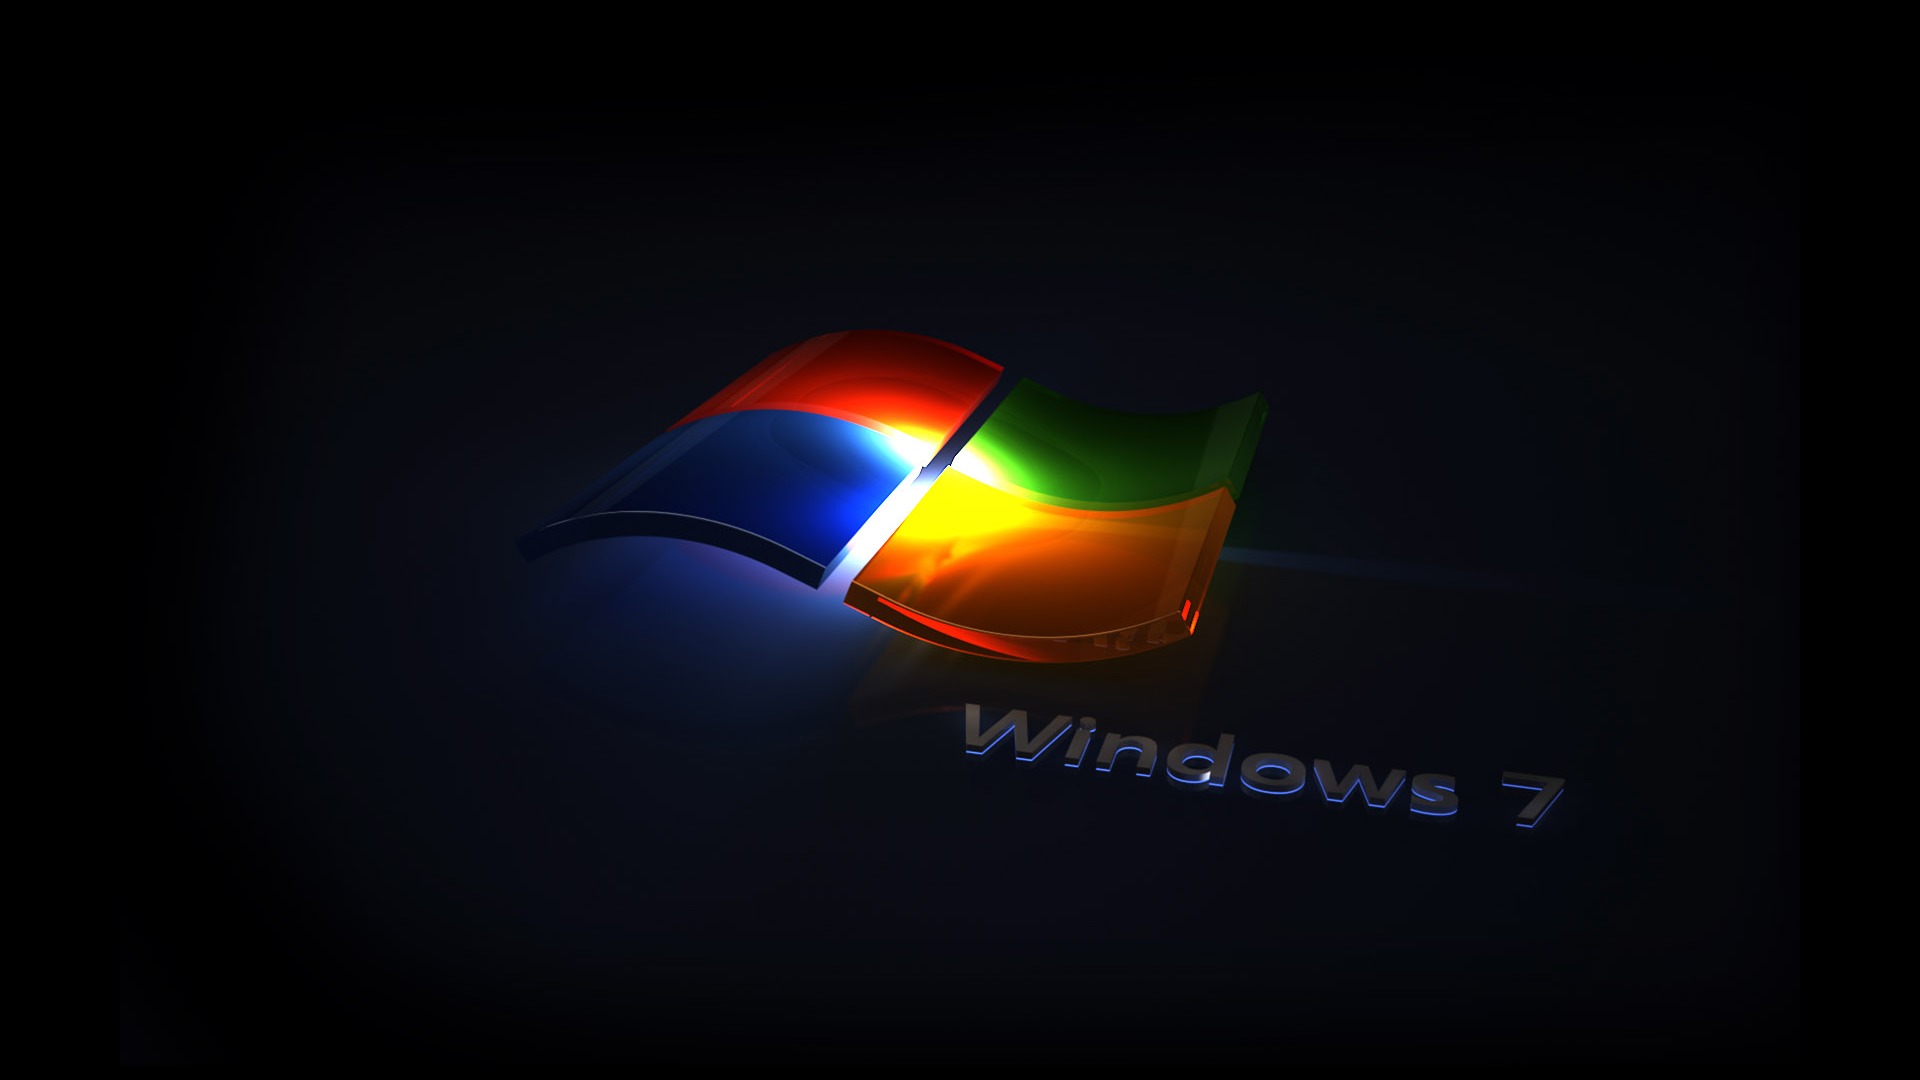 Windows7 theme wallpaper (2) #18 - 1920x1080